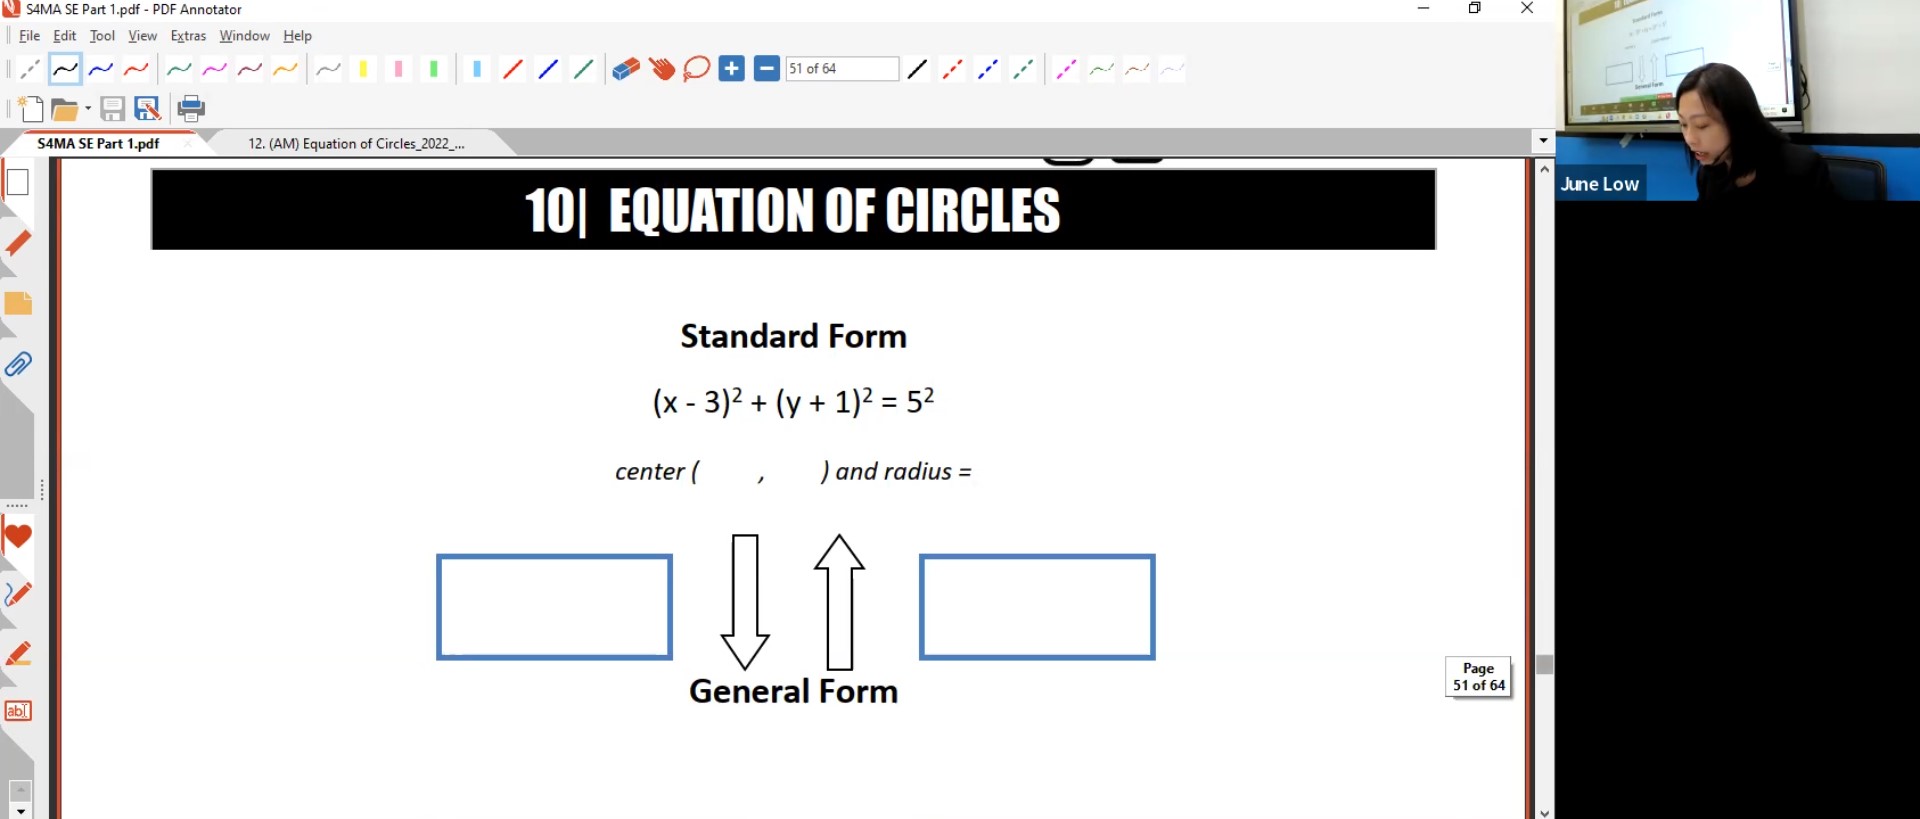 26. Final Revision: Equation of Circles [2022] - JL